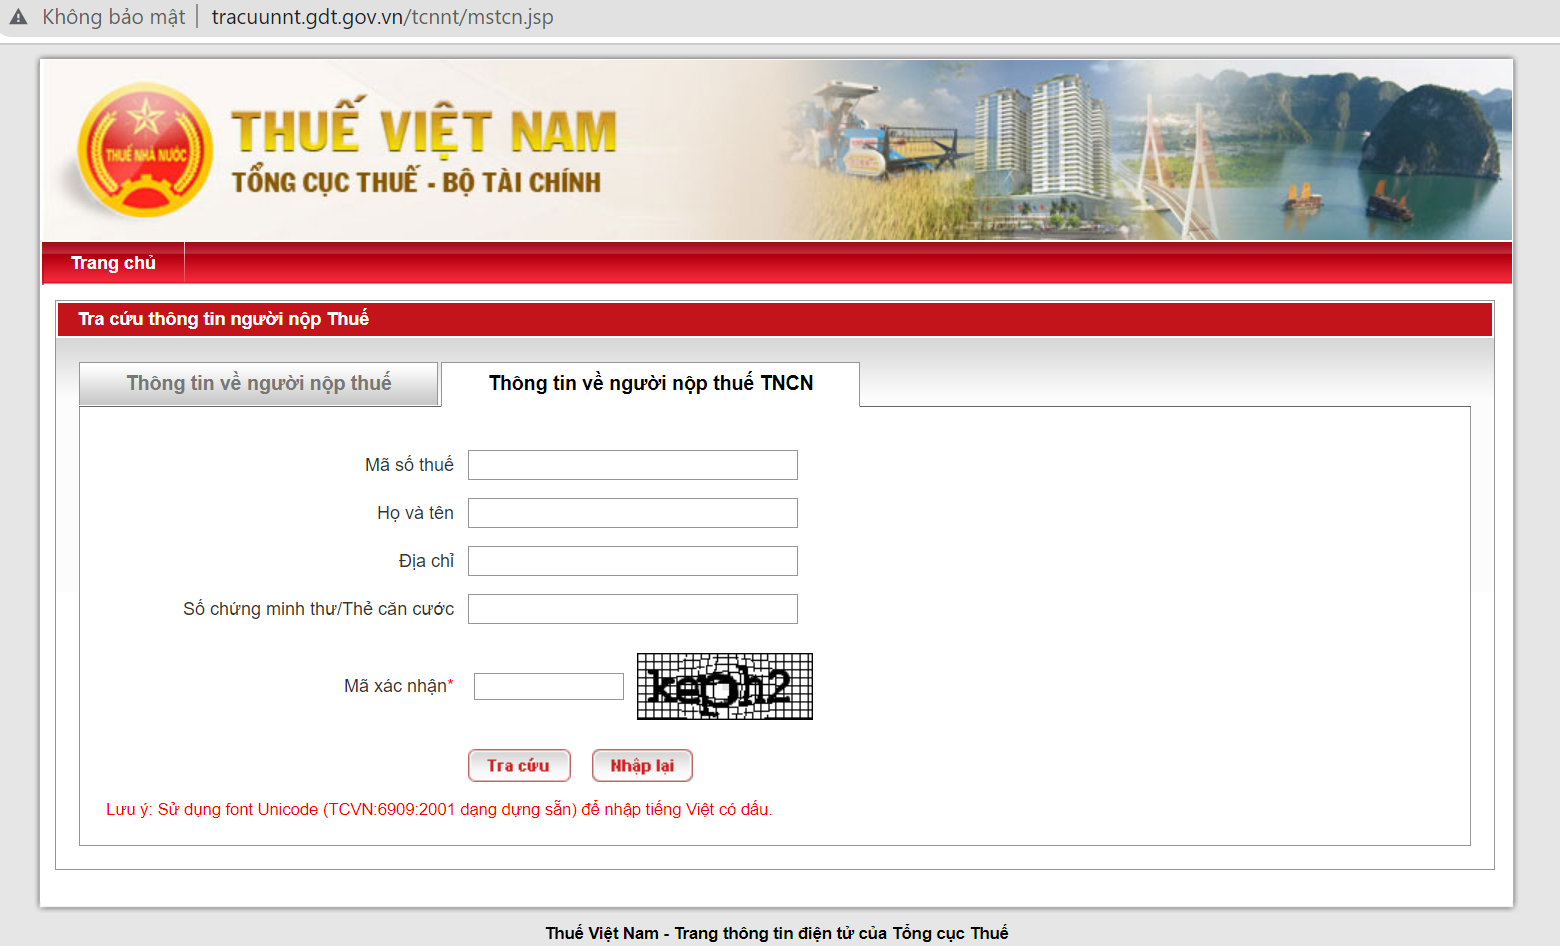 Trang website chính thức của Tổng Cục Thuế - Bộ Tài Chính Việt Nam